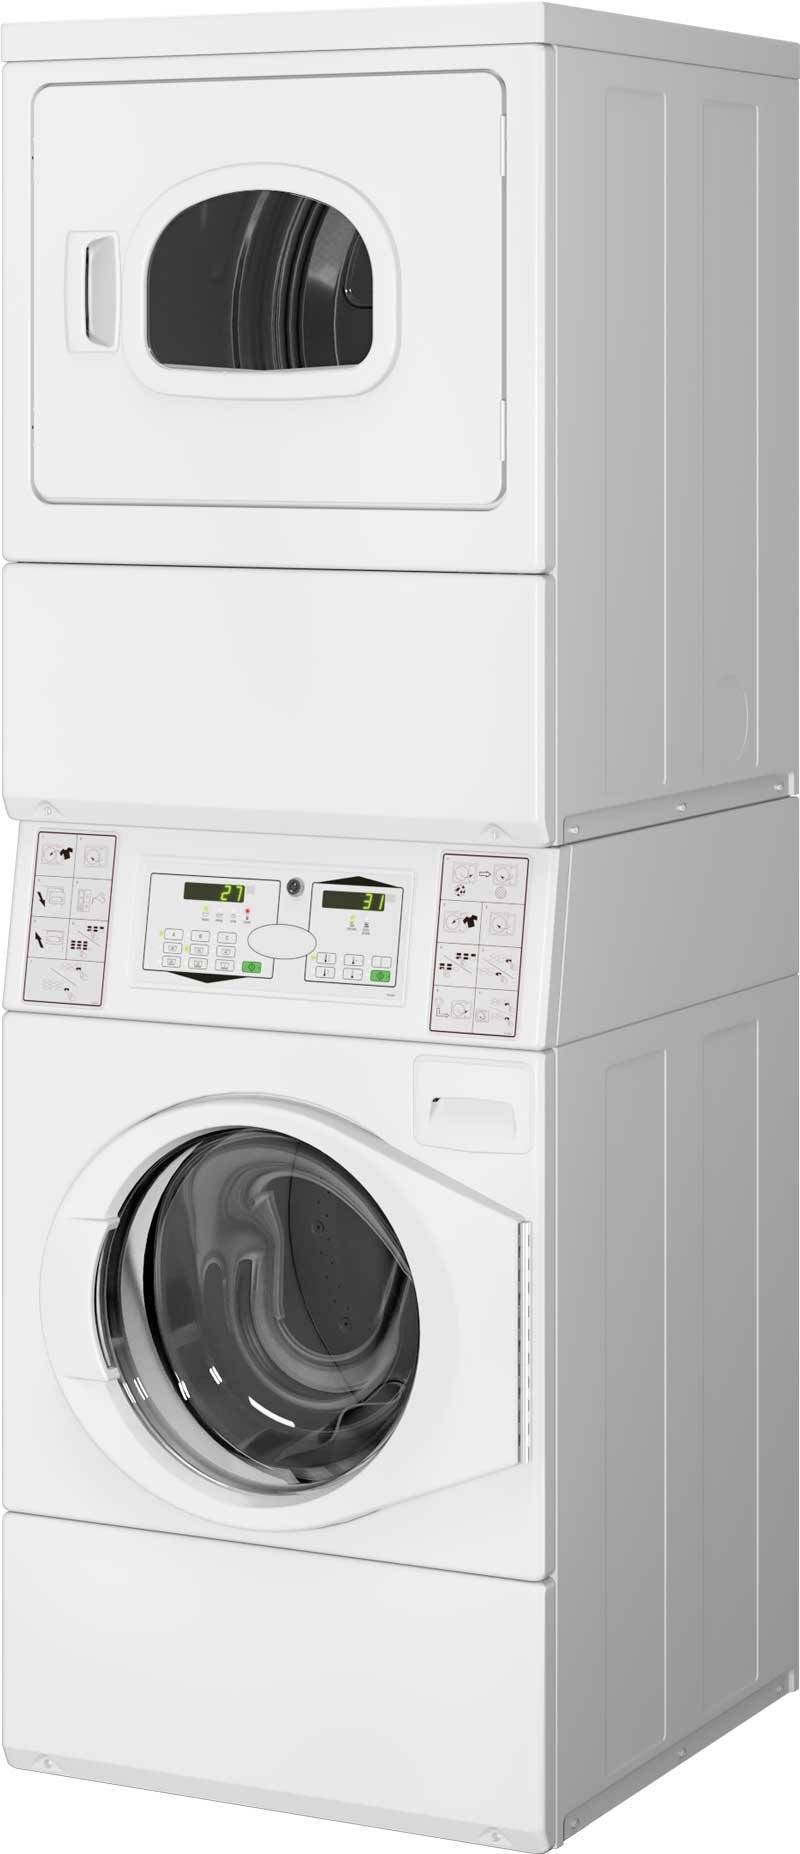 Как правильно выбрать надежную стиральную машину с сушкой - характеристики и производители